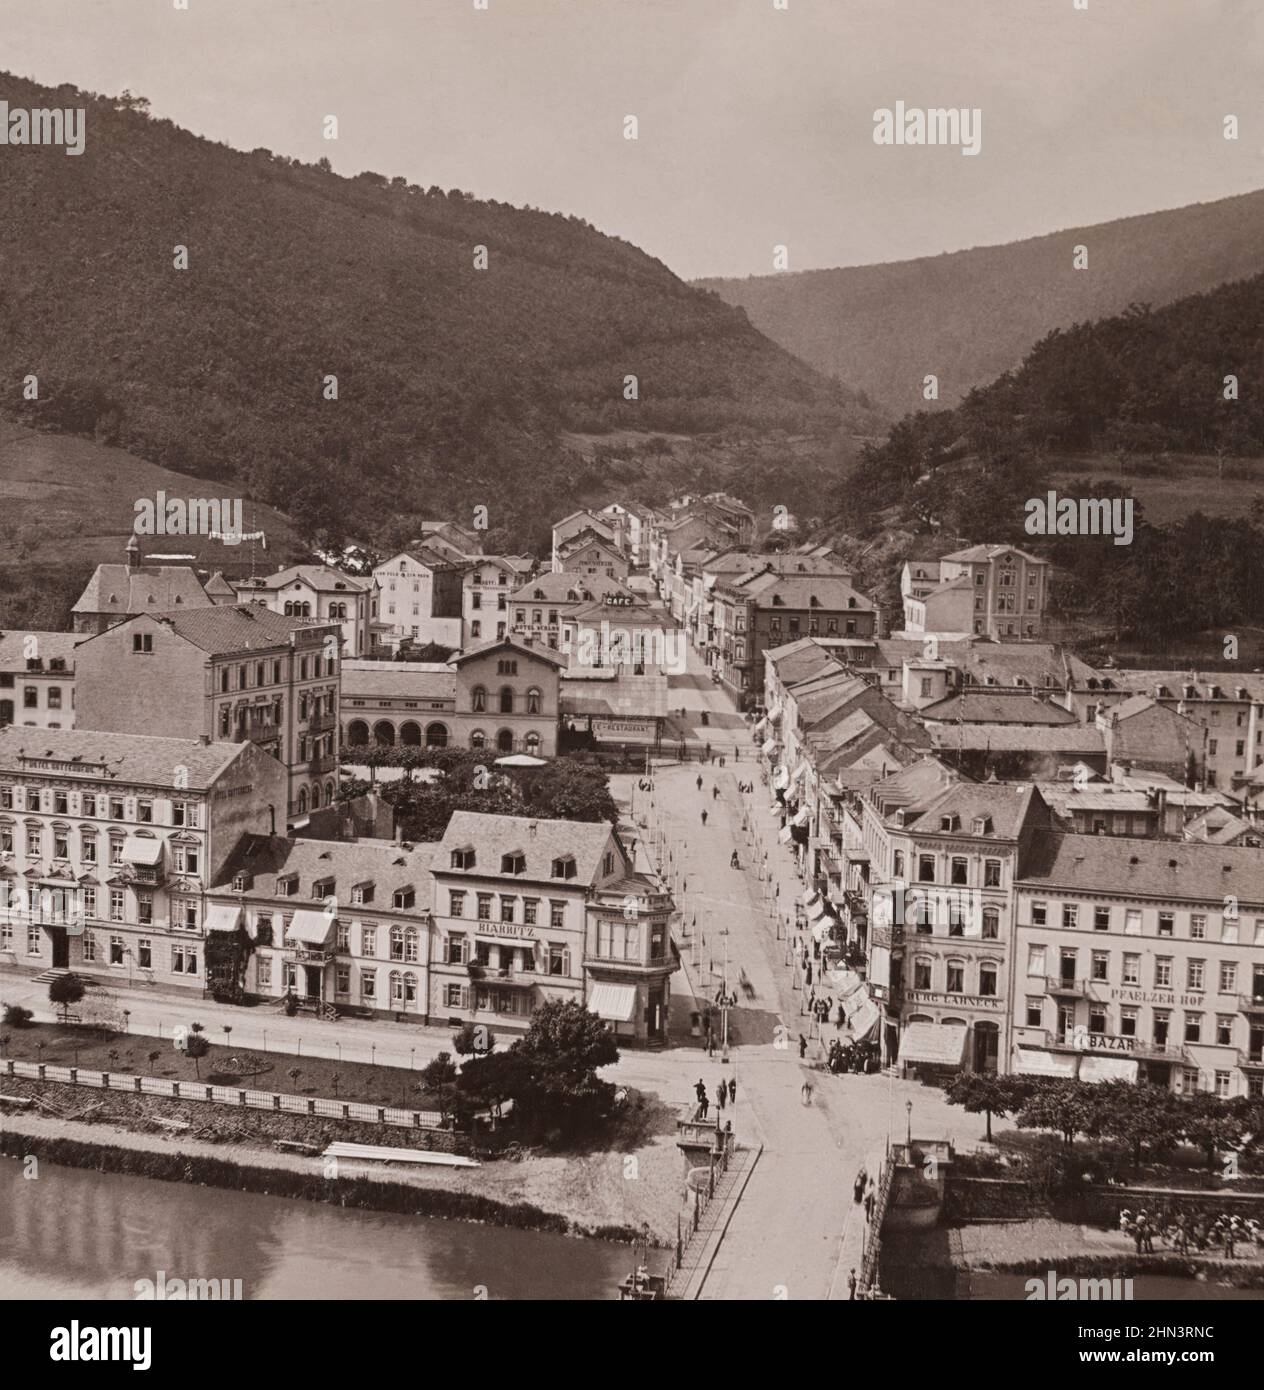 Foto vintage de la vista panorámica de Baden-Baden. Alemania. 1900s Foto de stock